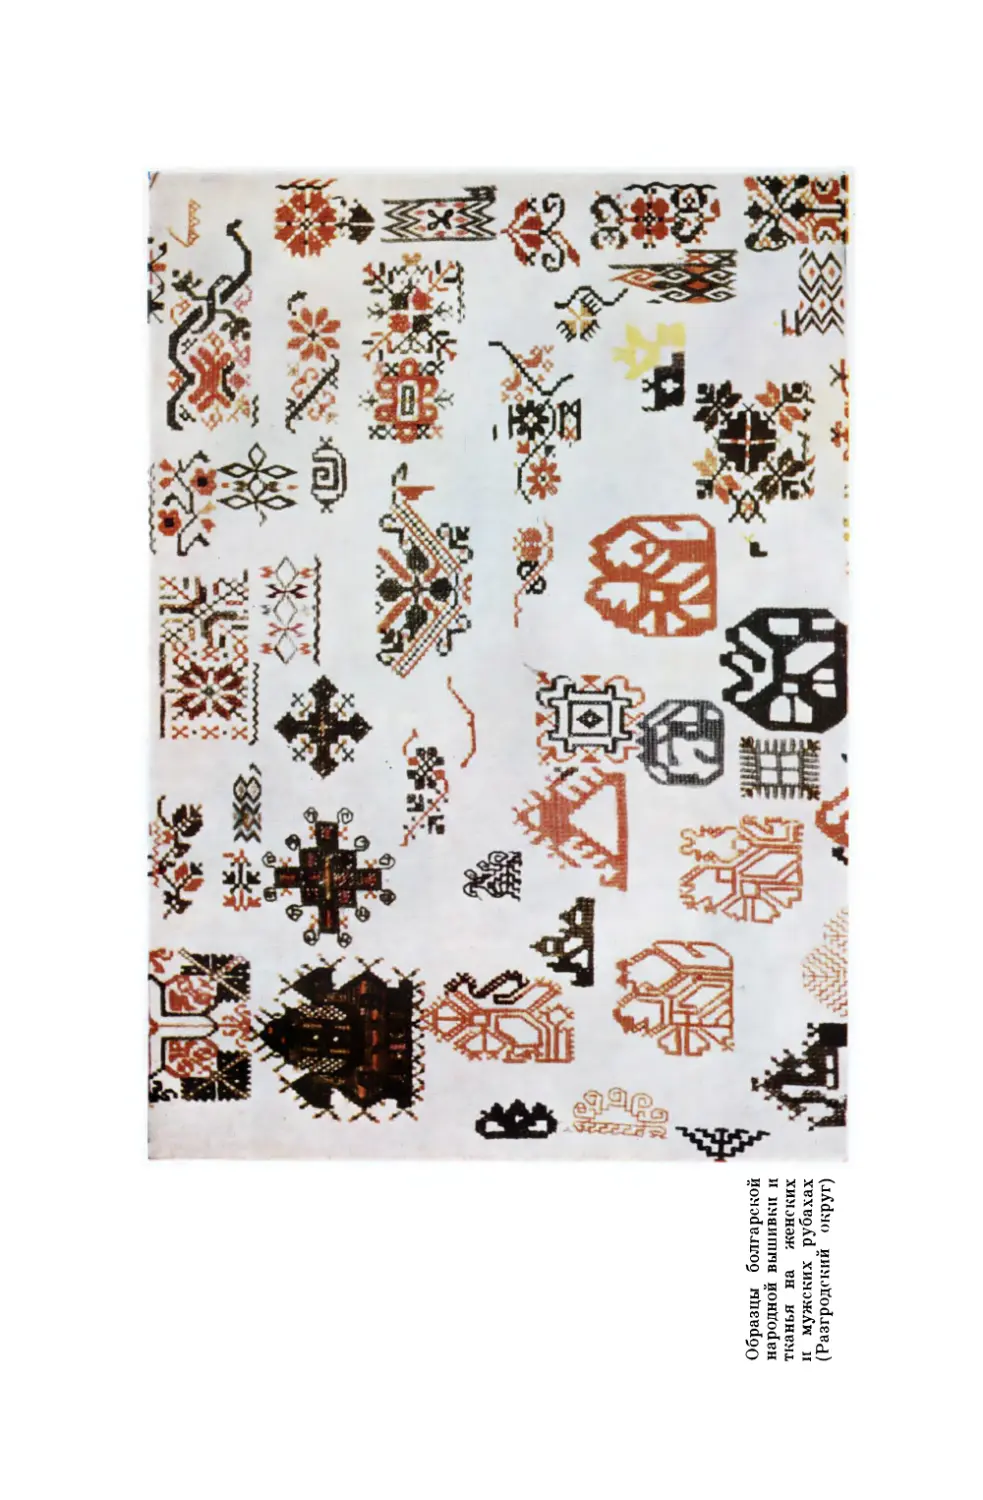 Вклейка. Образцы болгарской народной вышивки и тканья